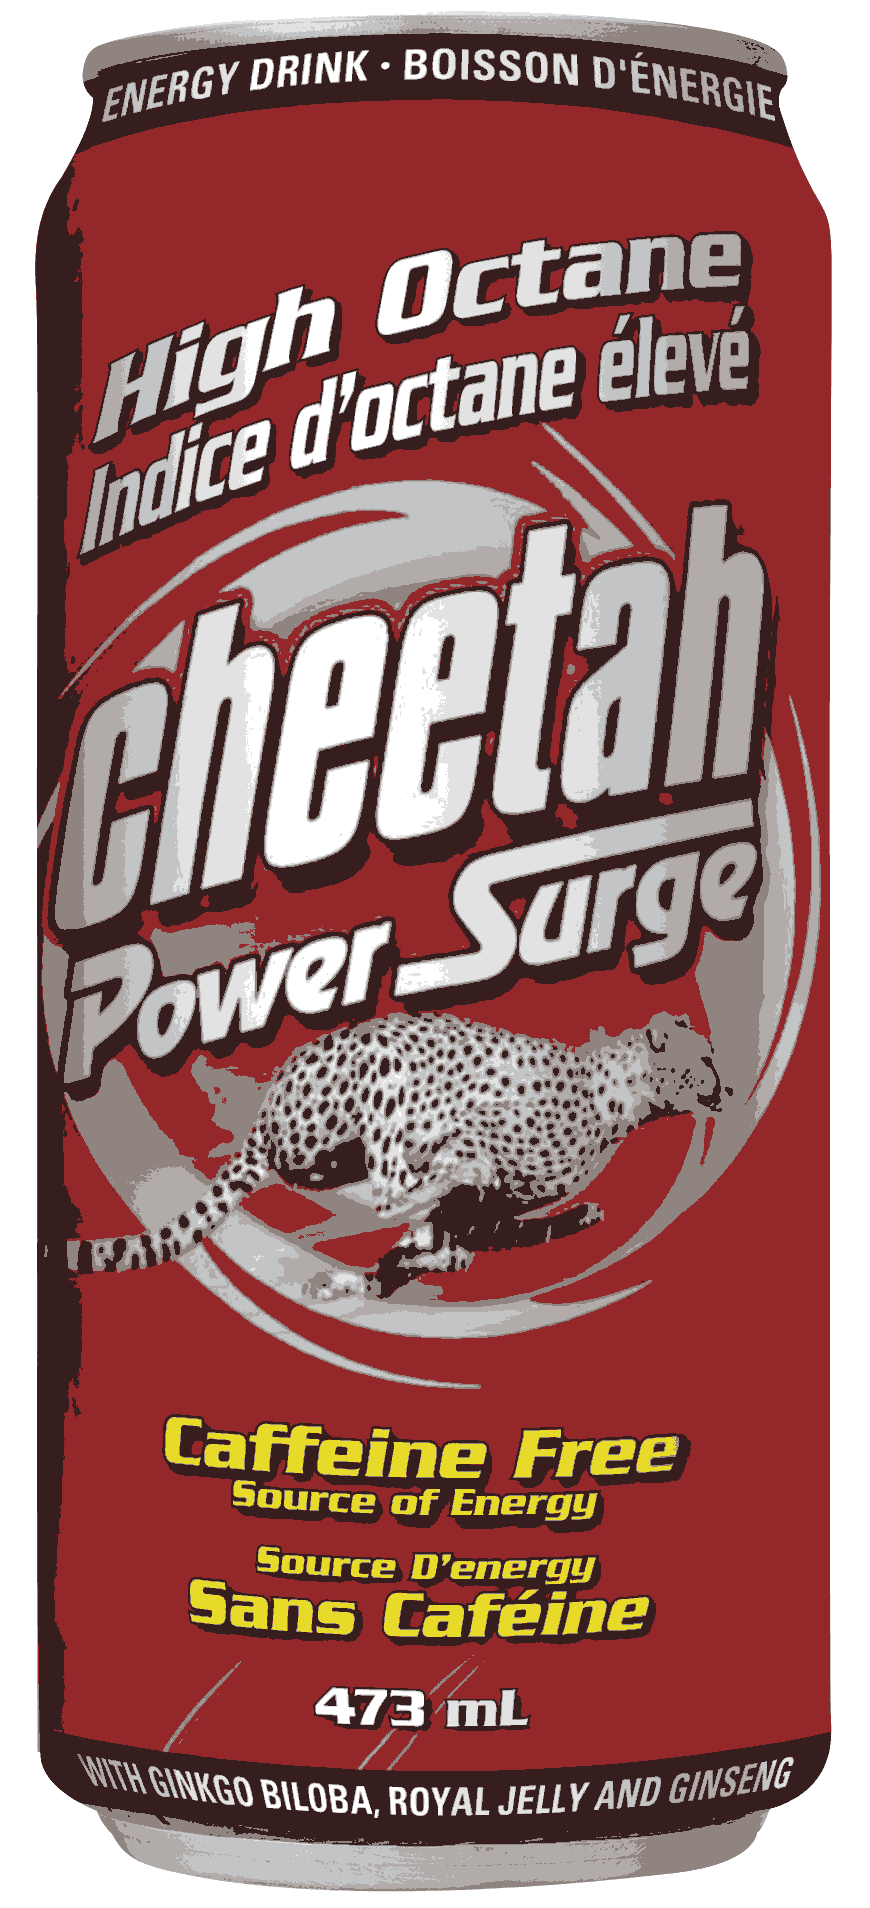 Boisson énergétique Cheetah Power Surrge